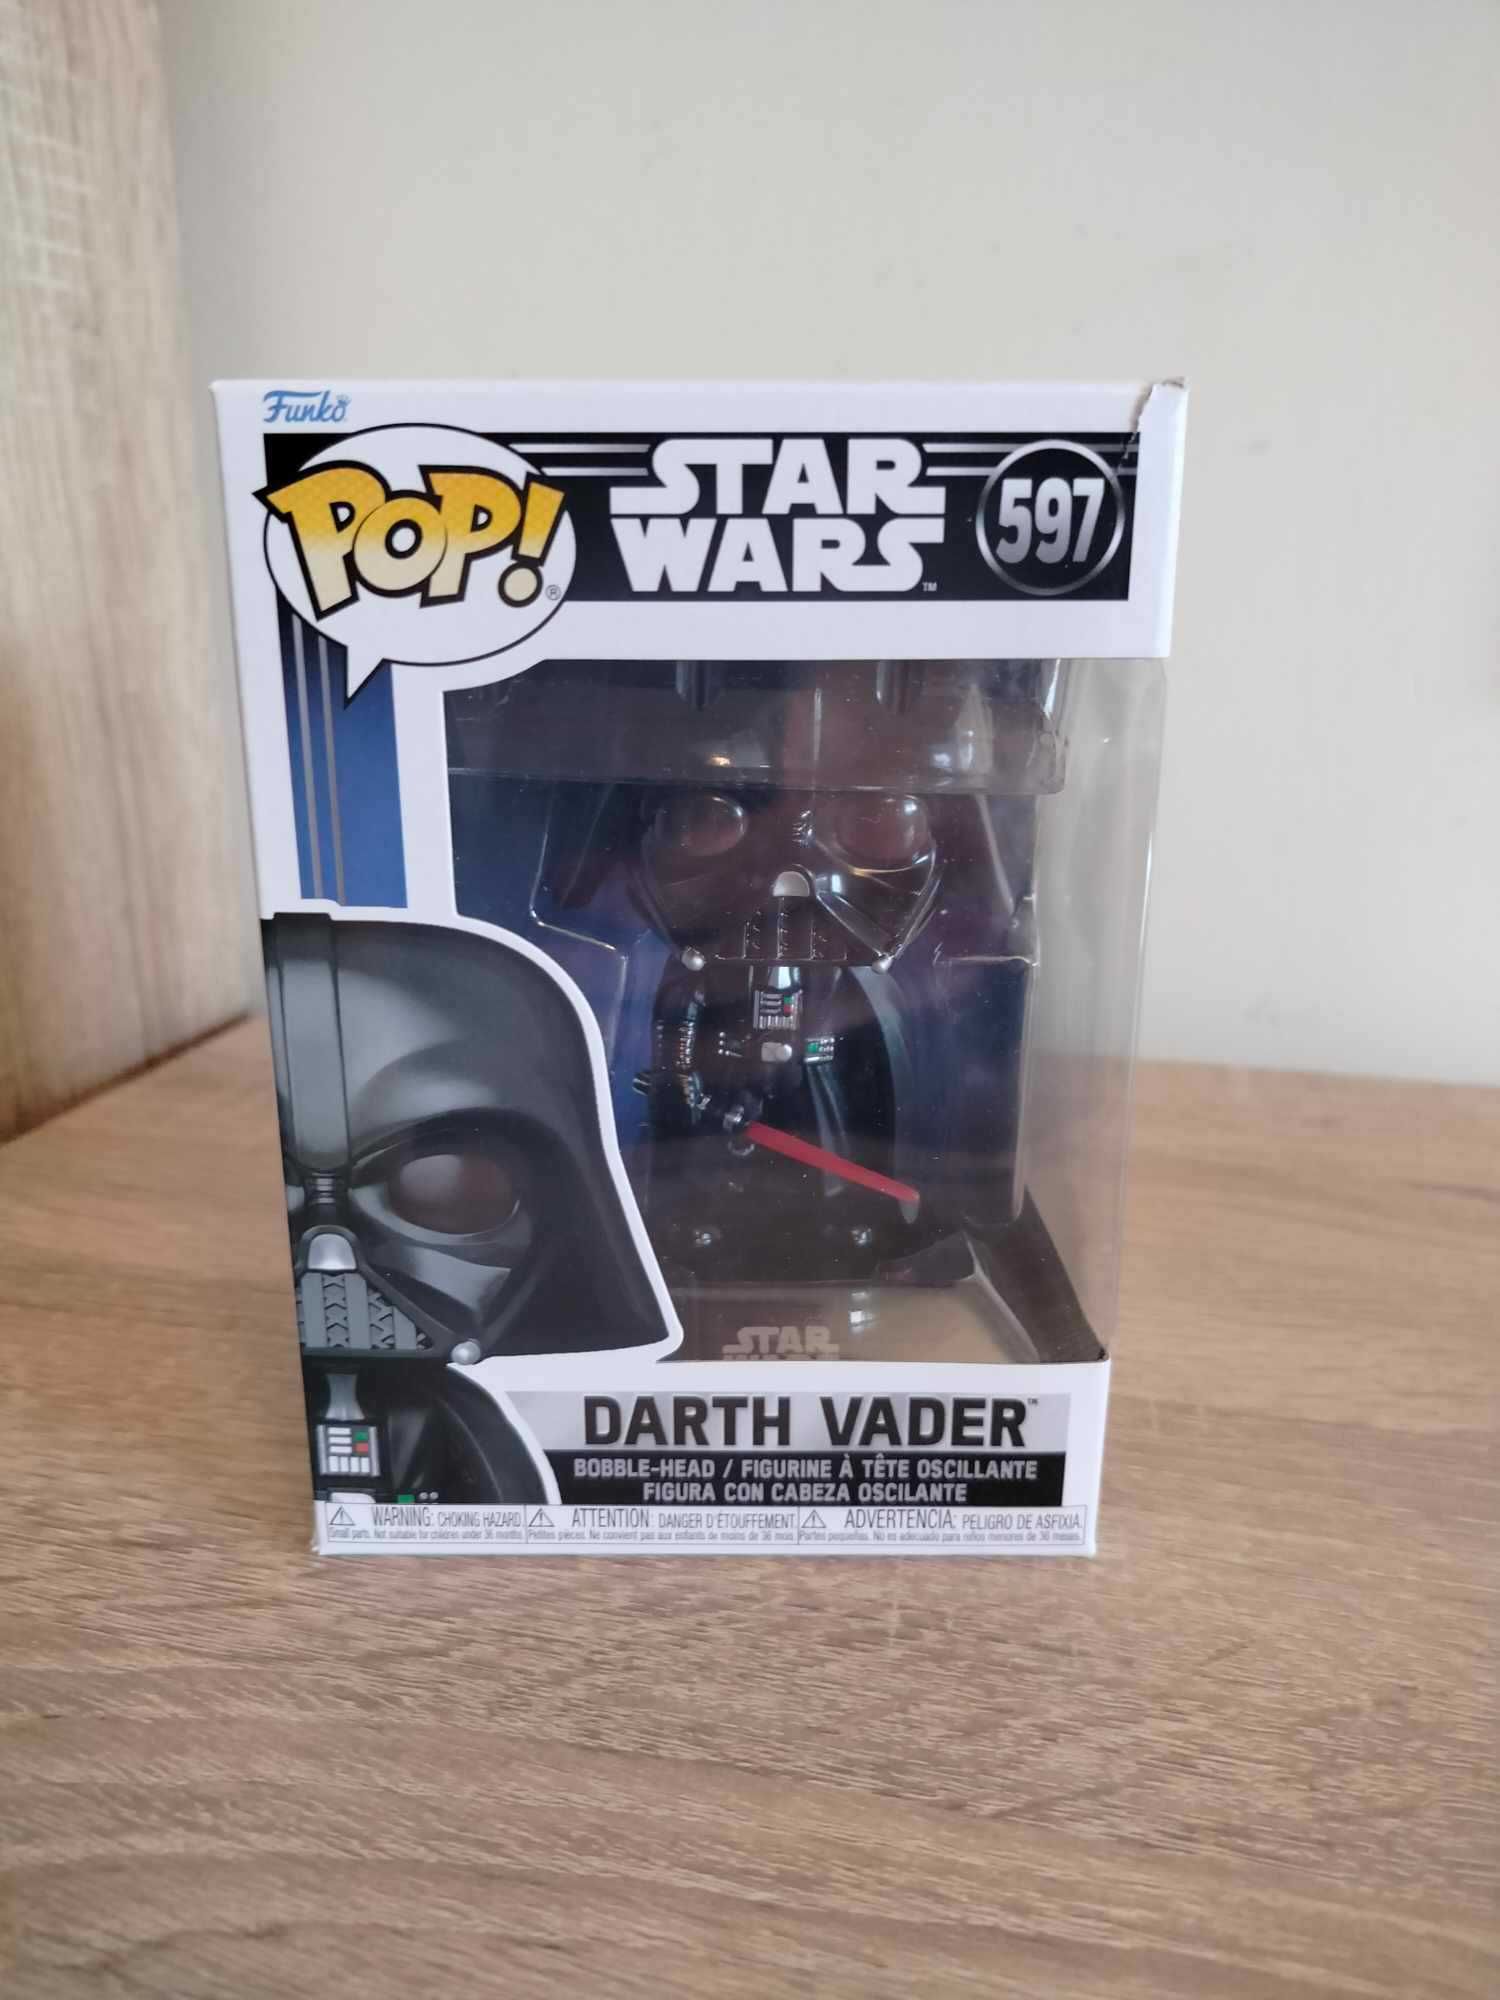 NOWE Funko POP! Star Wars, figurka kolekcjonerska, Darth Vader, 597